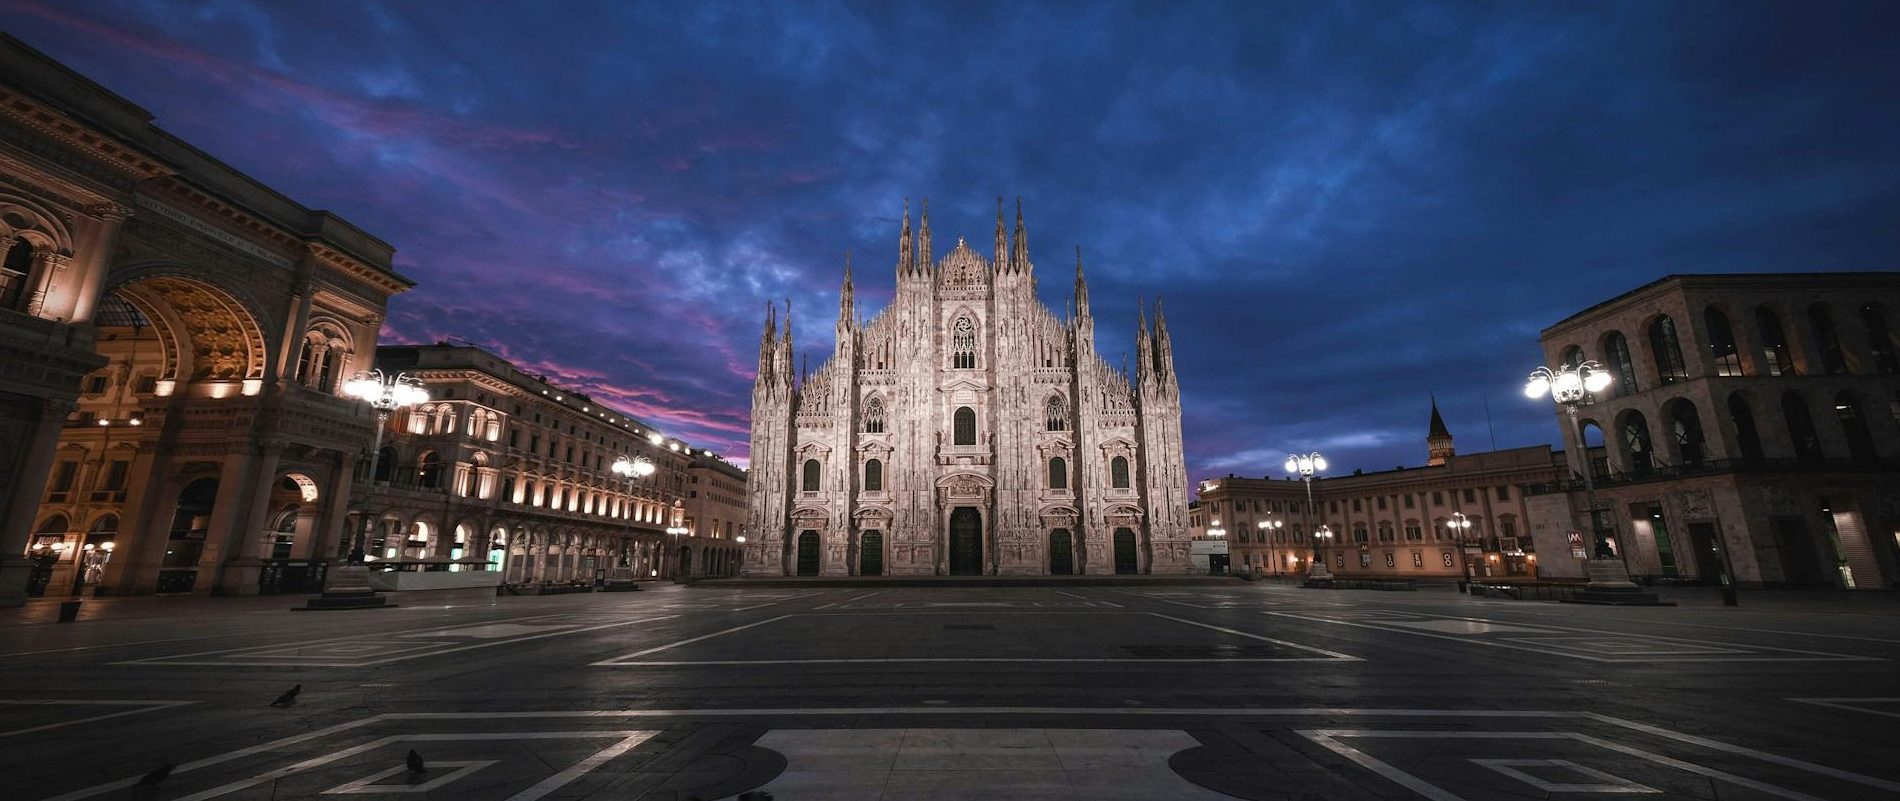 Milan at night - From London to Milan